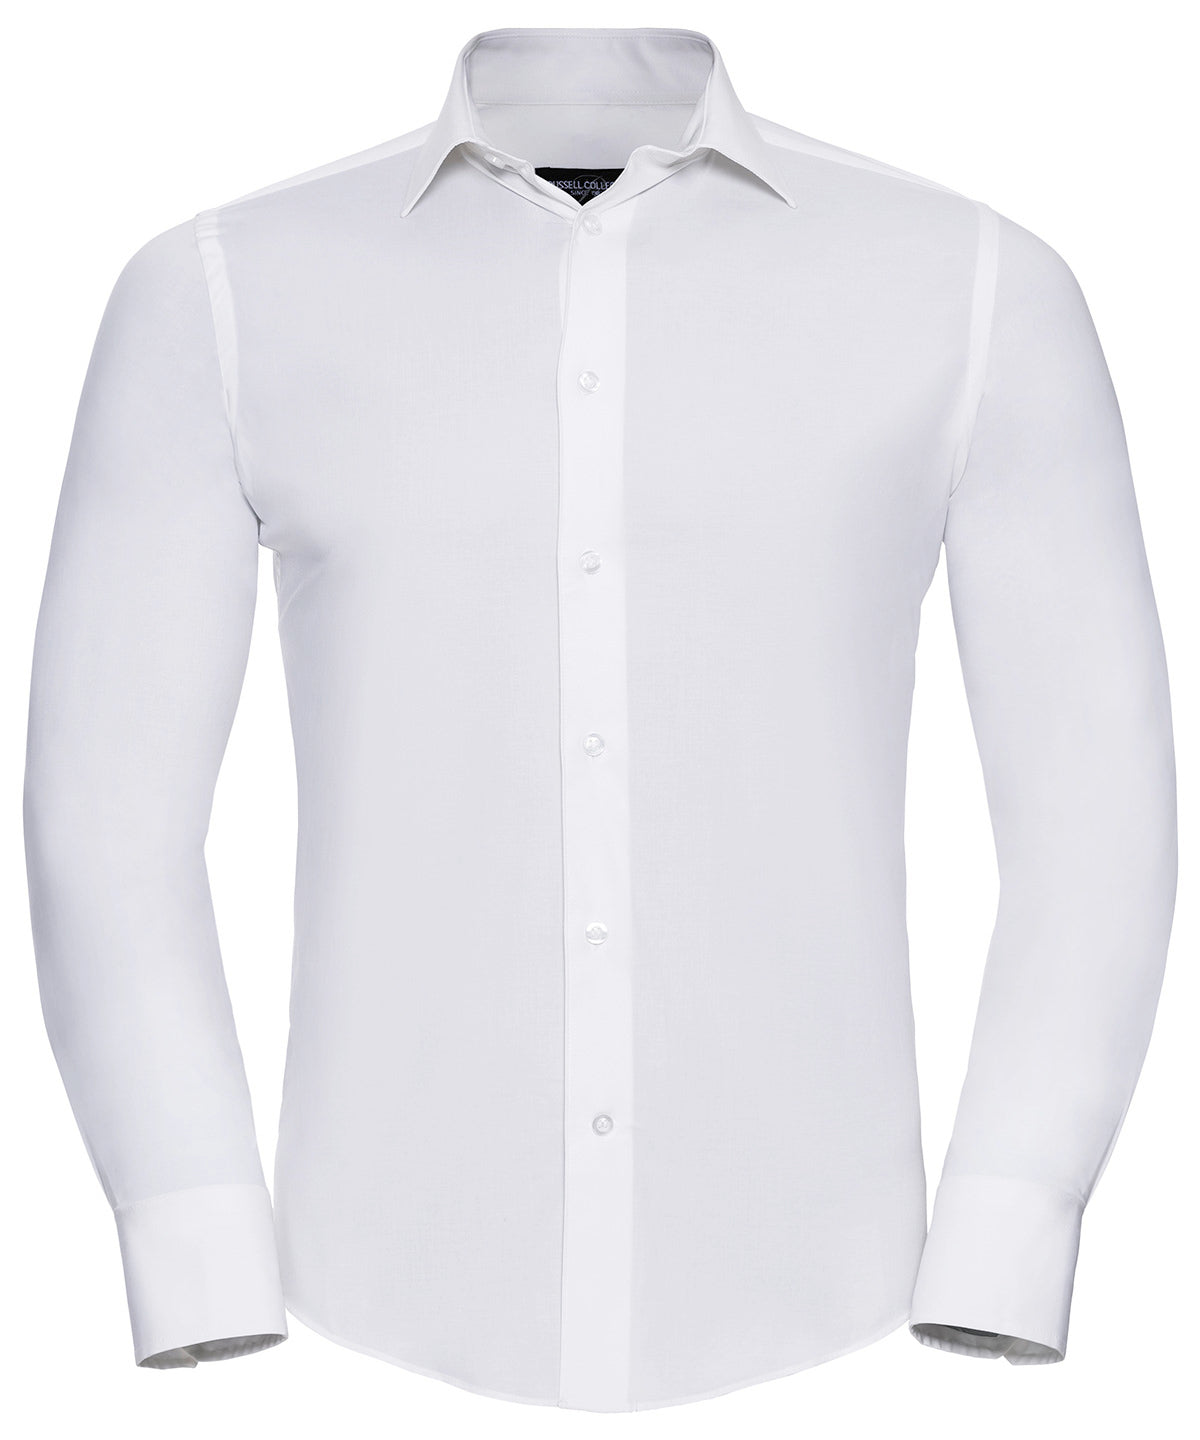 Bolir - Long Sleeve Easycare Fitted Shirt